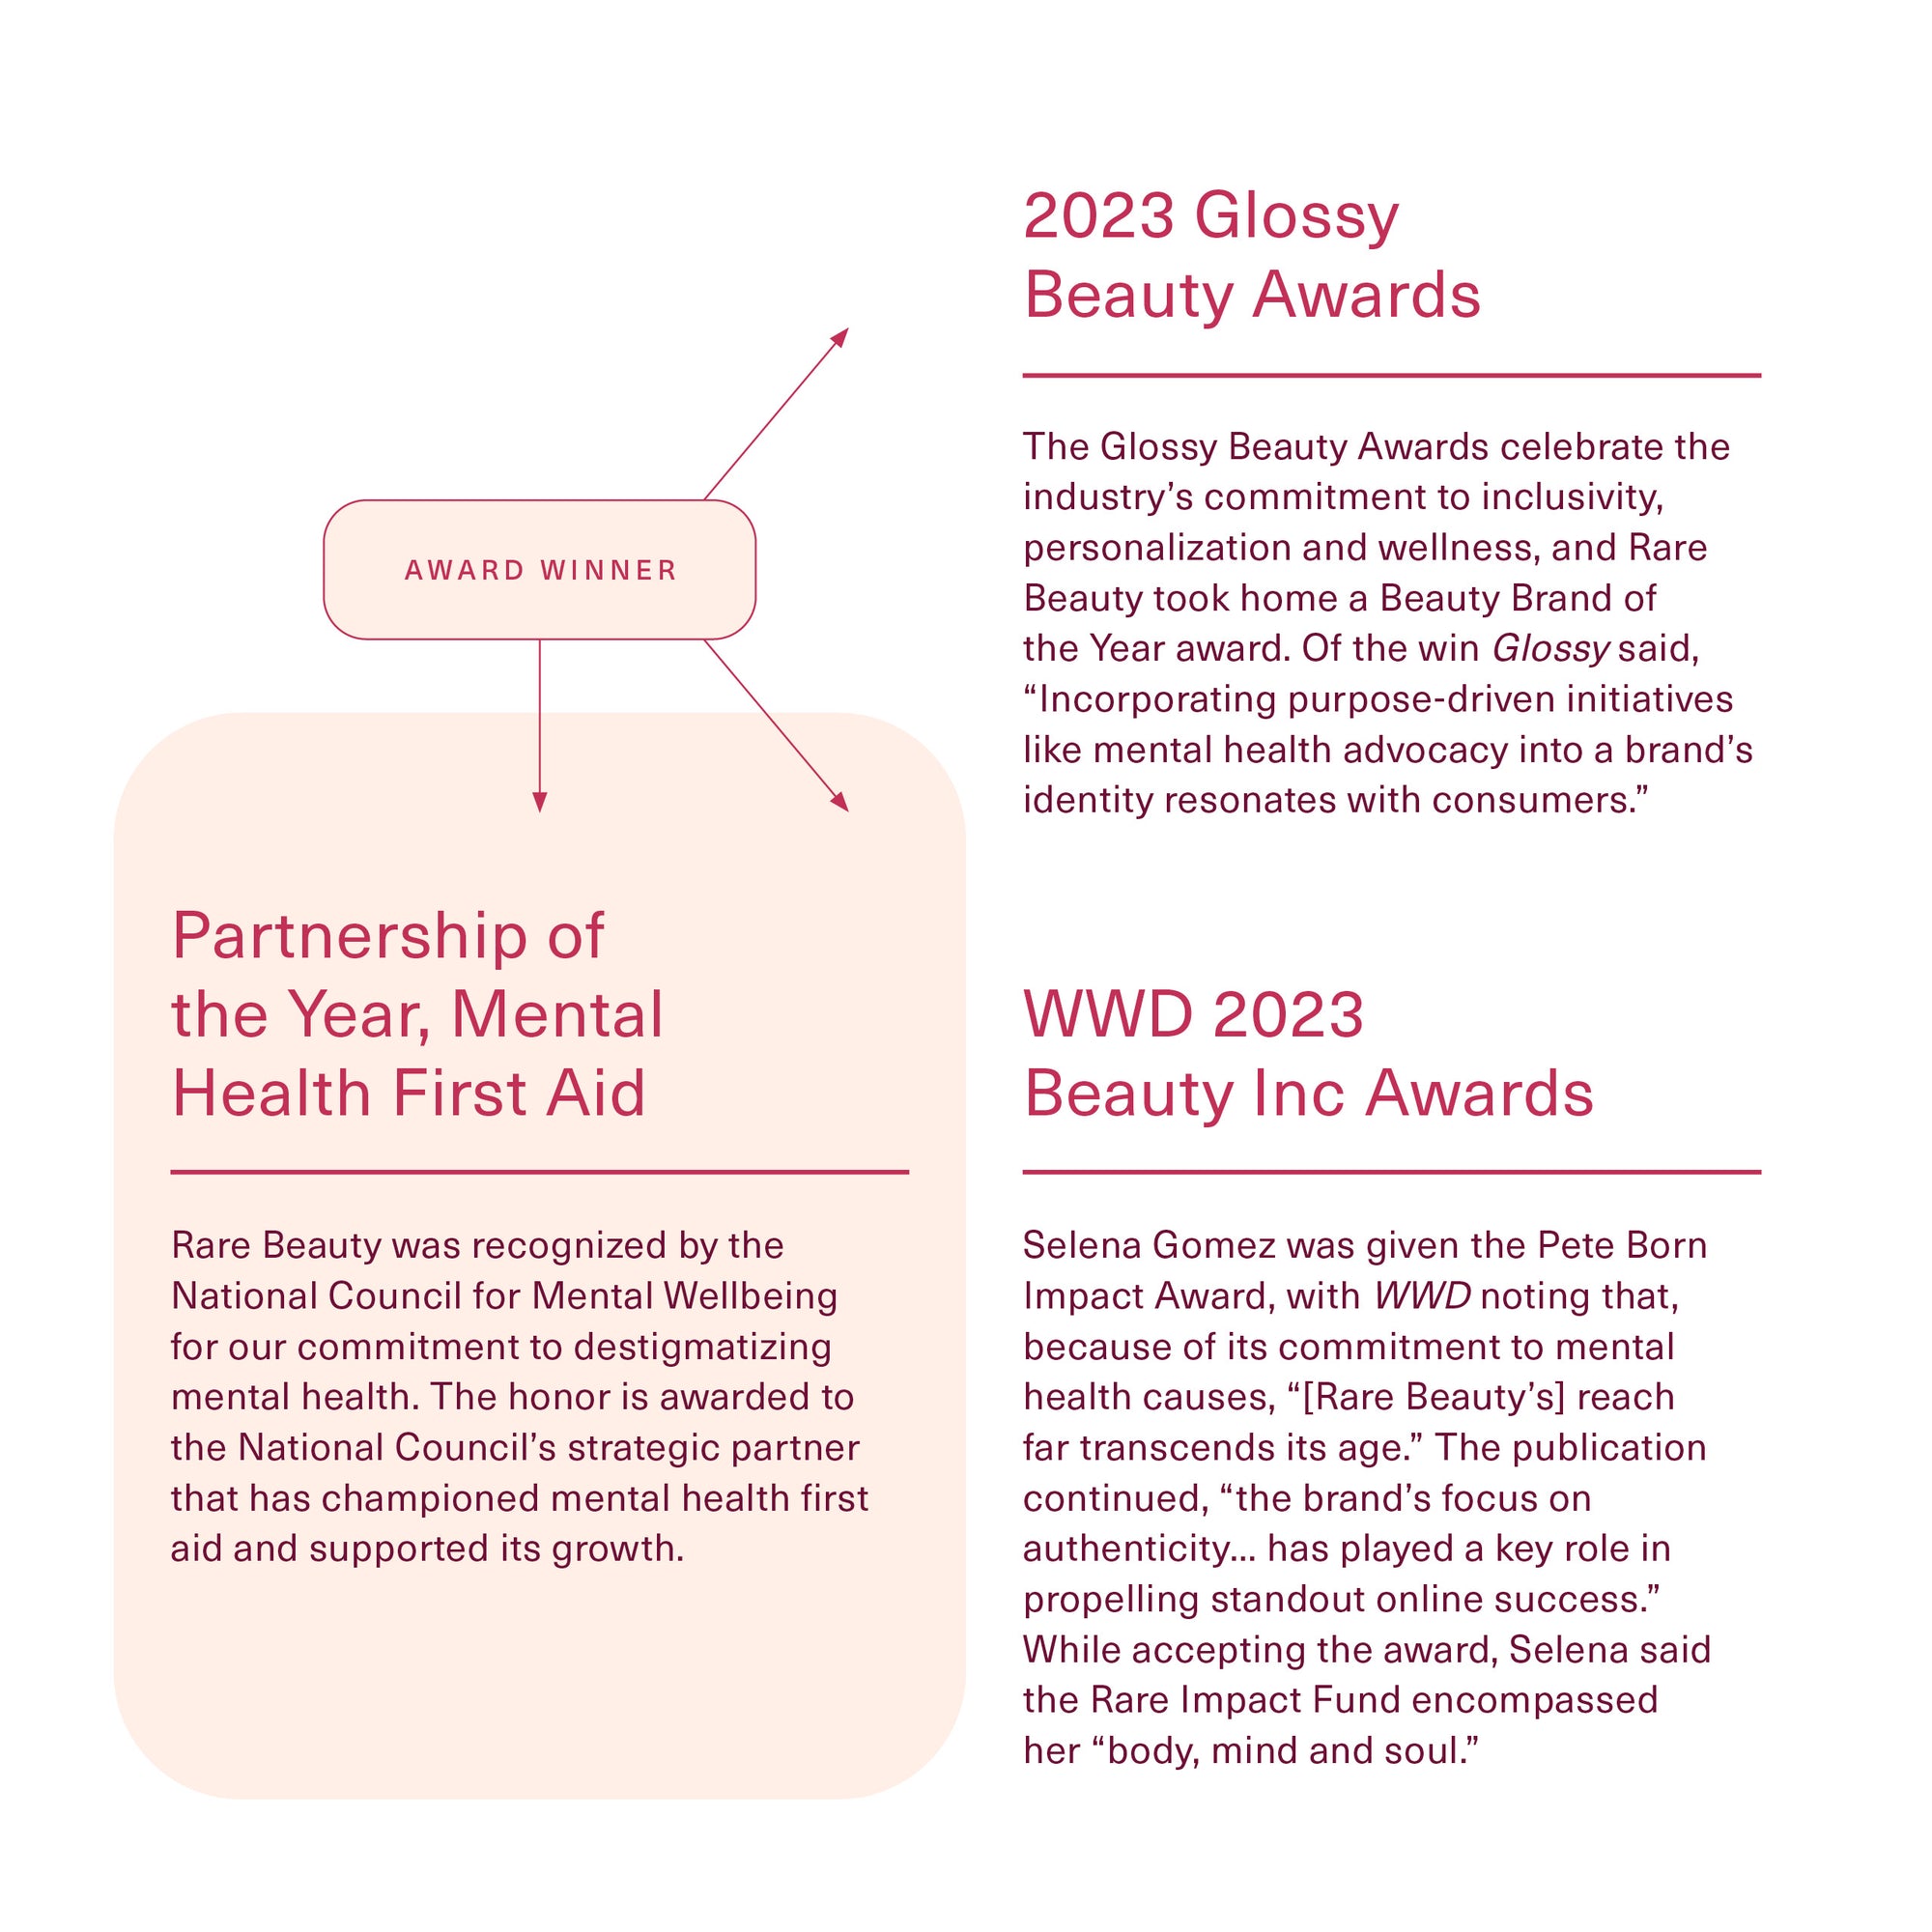 Thought Leadership - Award Winner: 2023 Glossy Beauty Awards, WWD 2023 Beauty Inc Awards